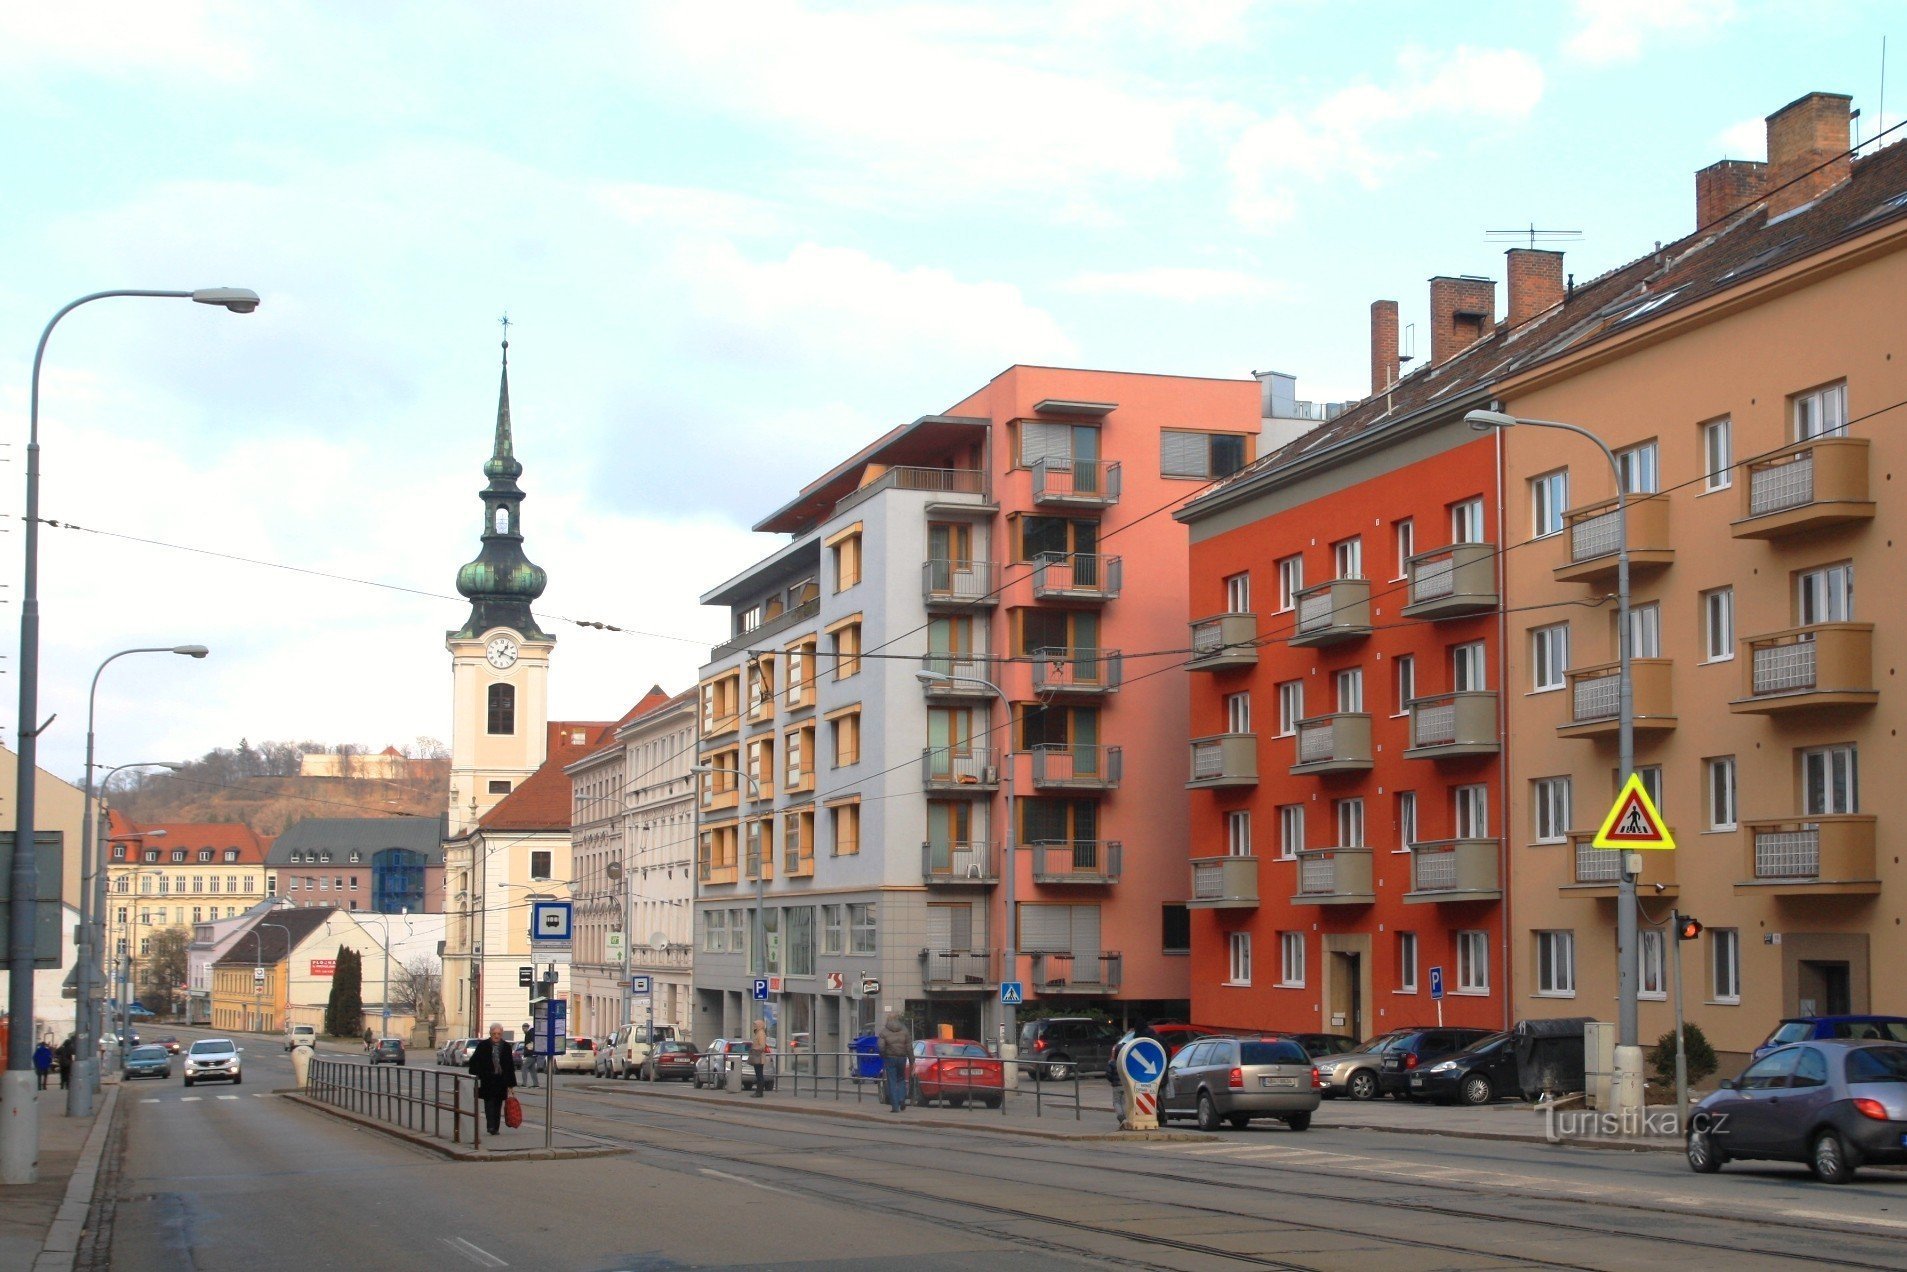 Các phương tiện giao thông công cộng dừng lại của Anh em nhân từ trên phố Vídeňská, trong nền là tháp của Nhà thờ St. Leopold